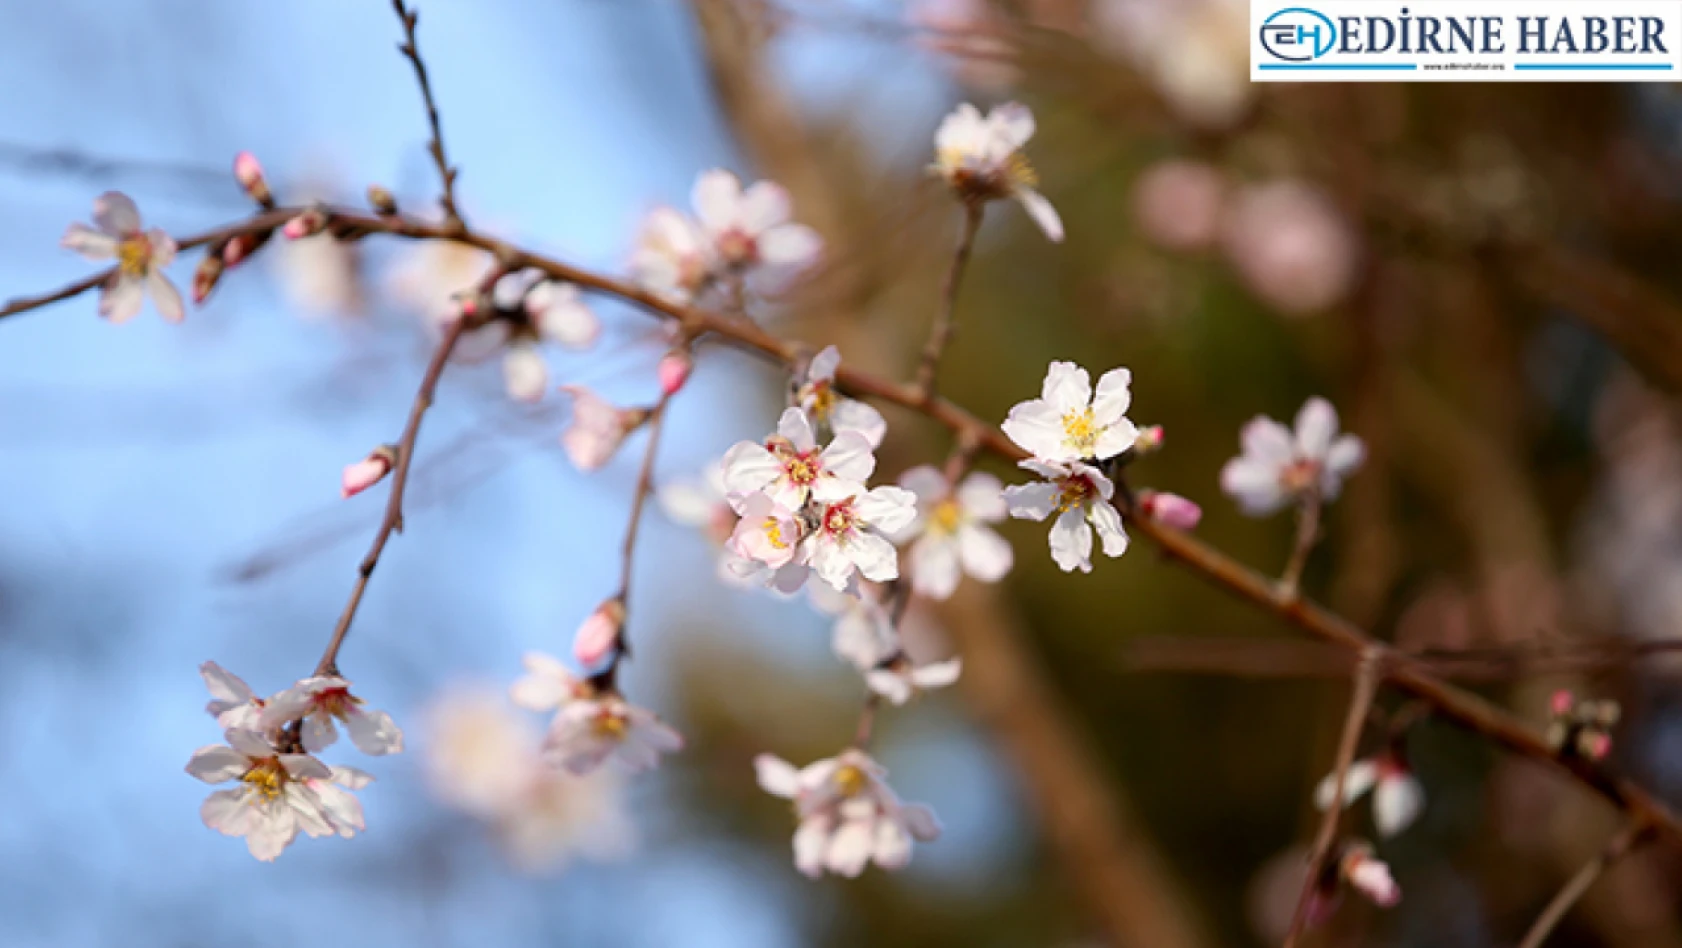 Sıcaklığın mevsim normallerinin üstünde olduğu Kırklareli'nde badem ağacı çiçek açtı